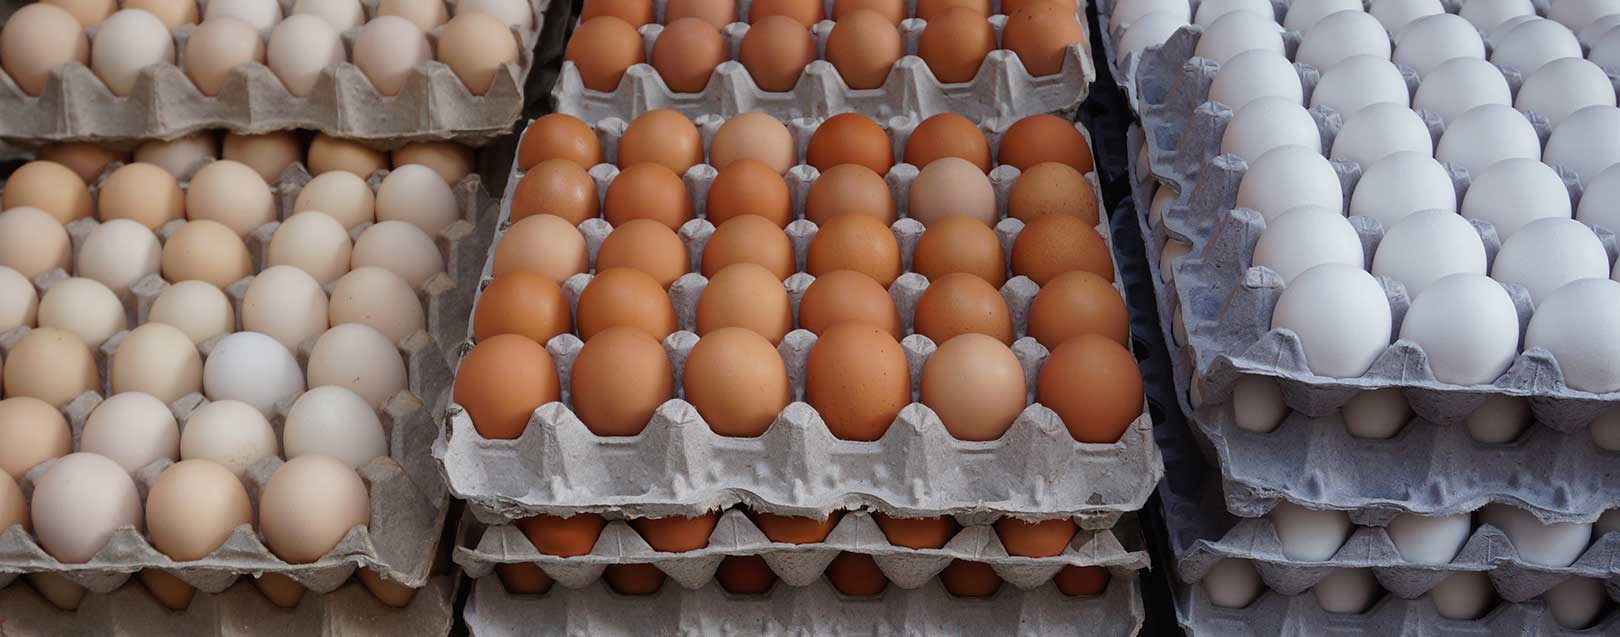 قیمت شانه تخم مرغ مقوایی از تولید به مصرف